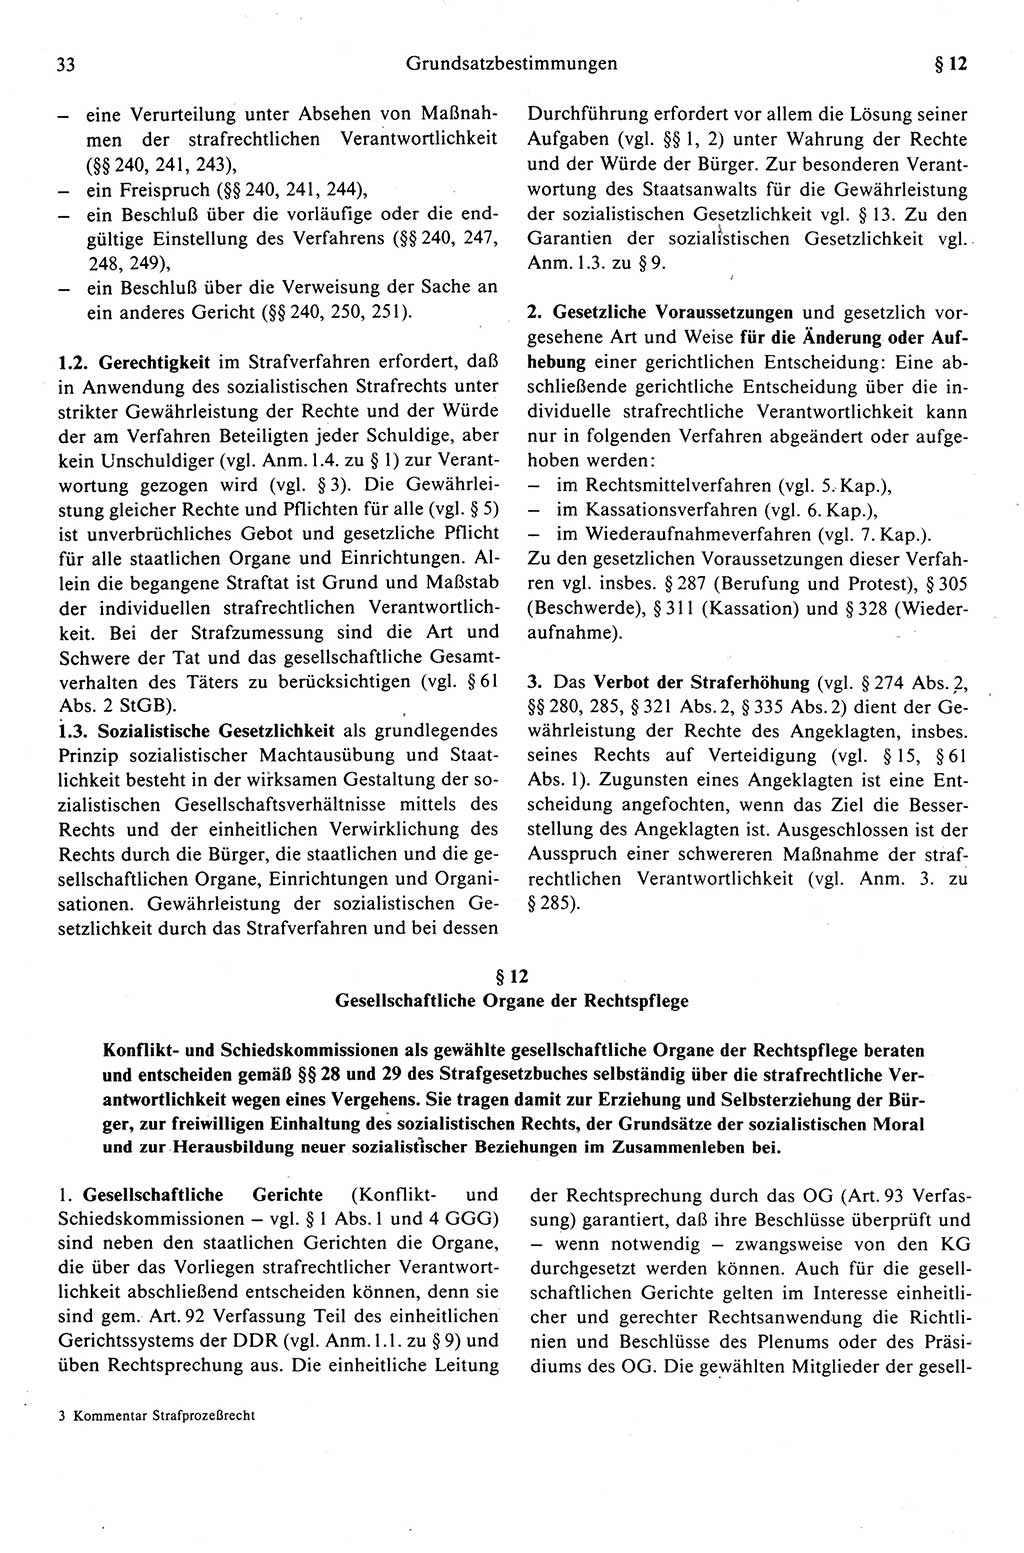 Strafprozeßrecht der DDR (Deutsche Demokratische Republik), Kommentar zur Strafprozeßordnung (StPO) 1989, Seite 33 (Strafprozeßr. DDR Komm. StPO 1989, S. 33)